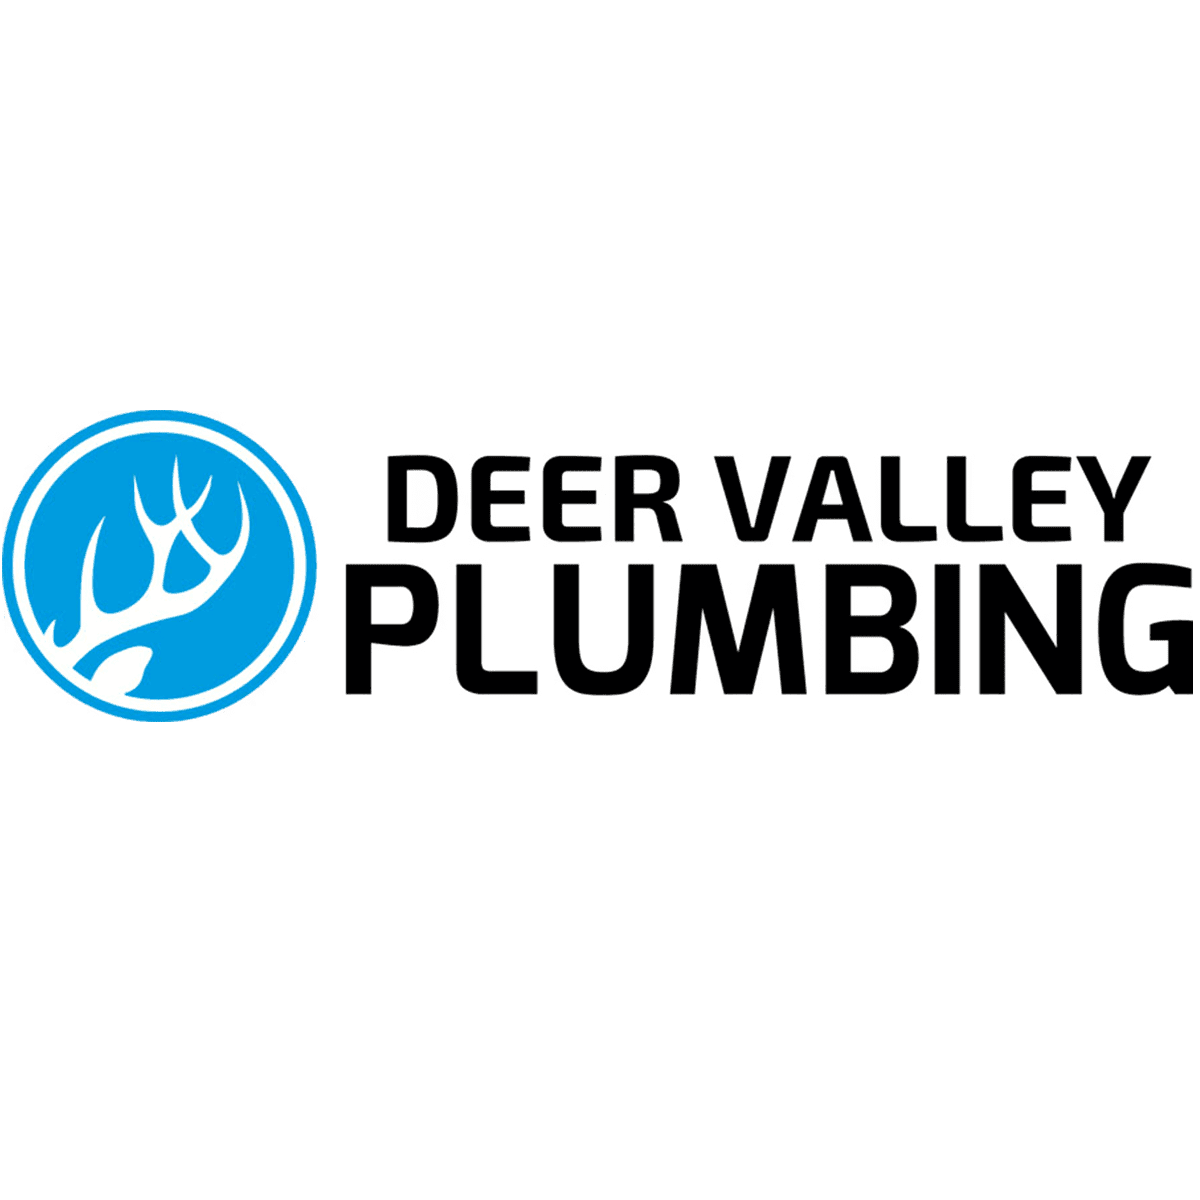 Deer Valley Plumbing Contractors, Inc.